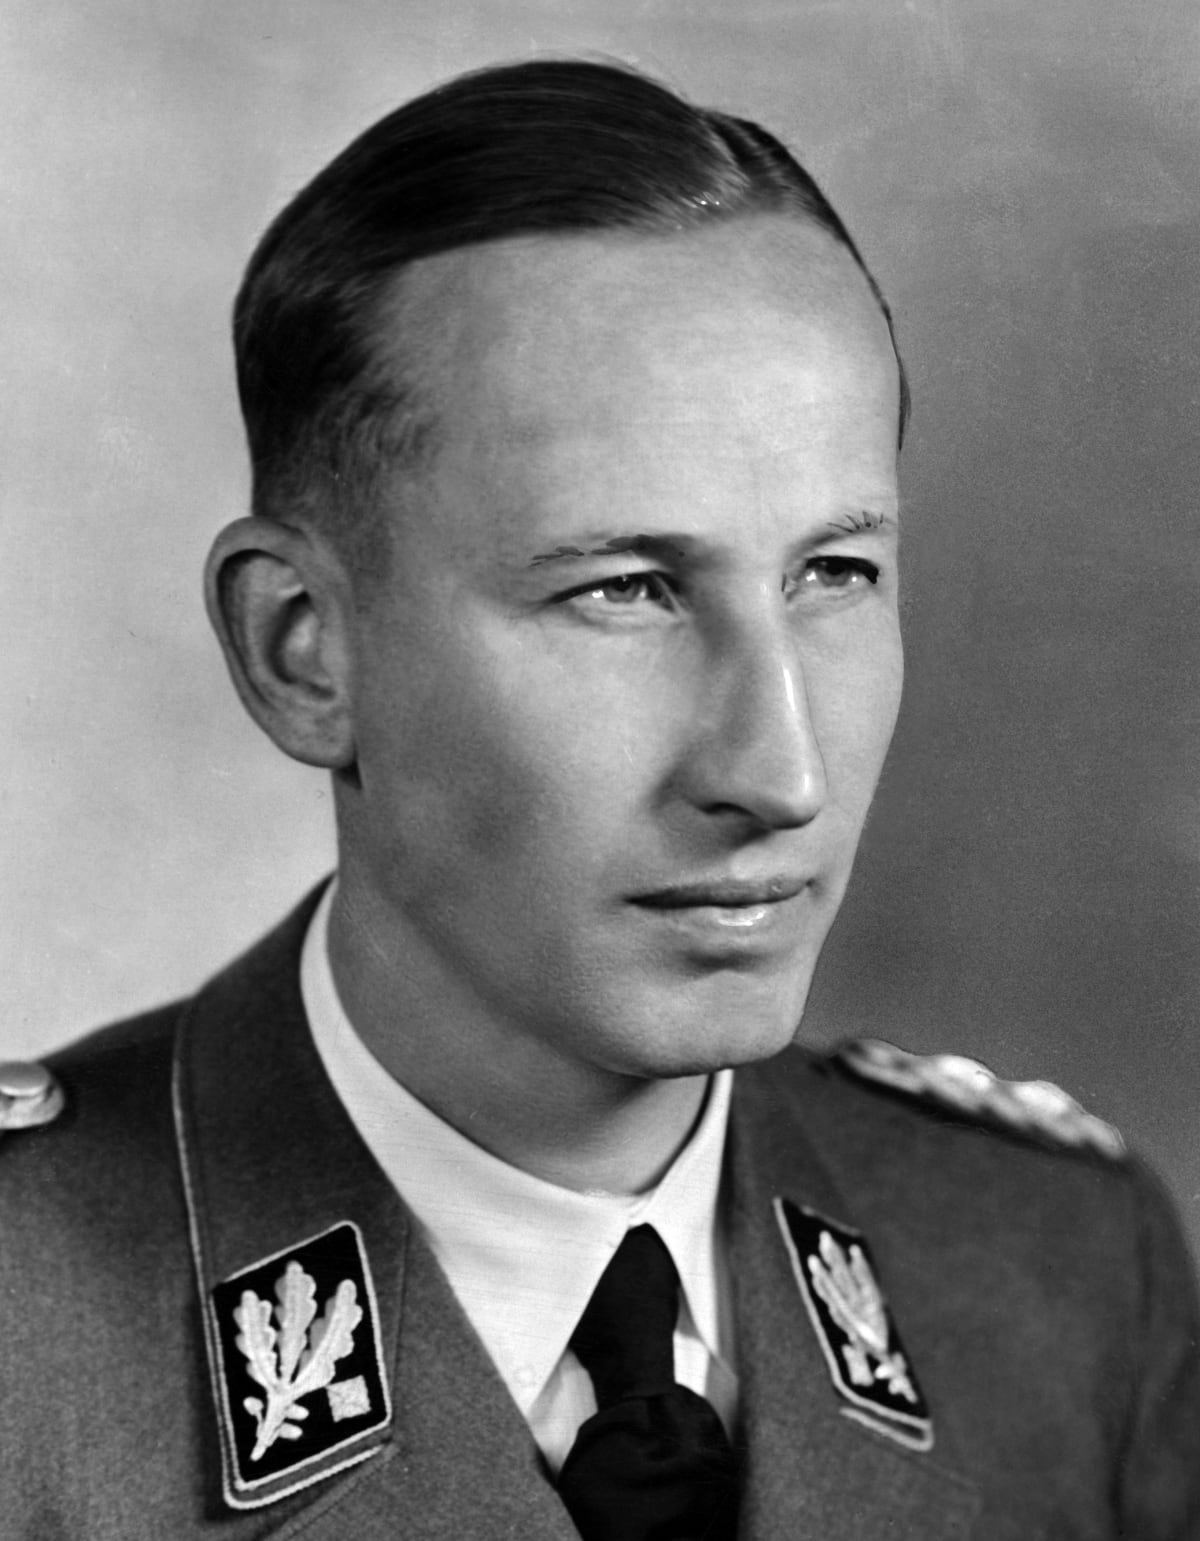 Zastupující říšský protektor Reinhard Heydrich.